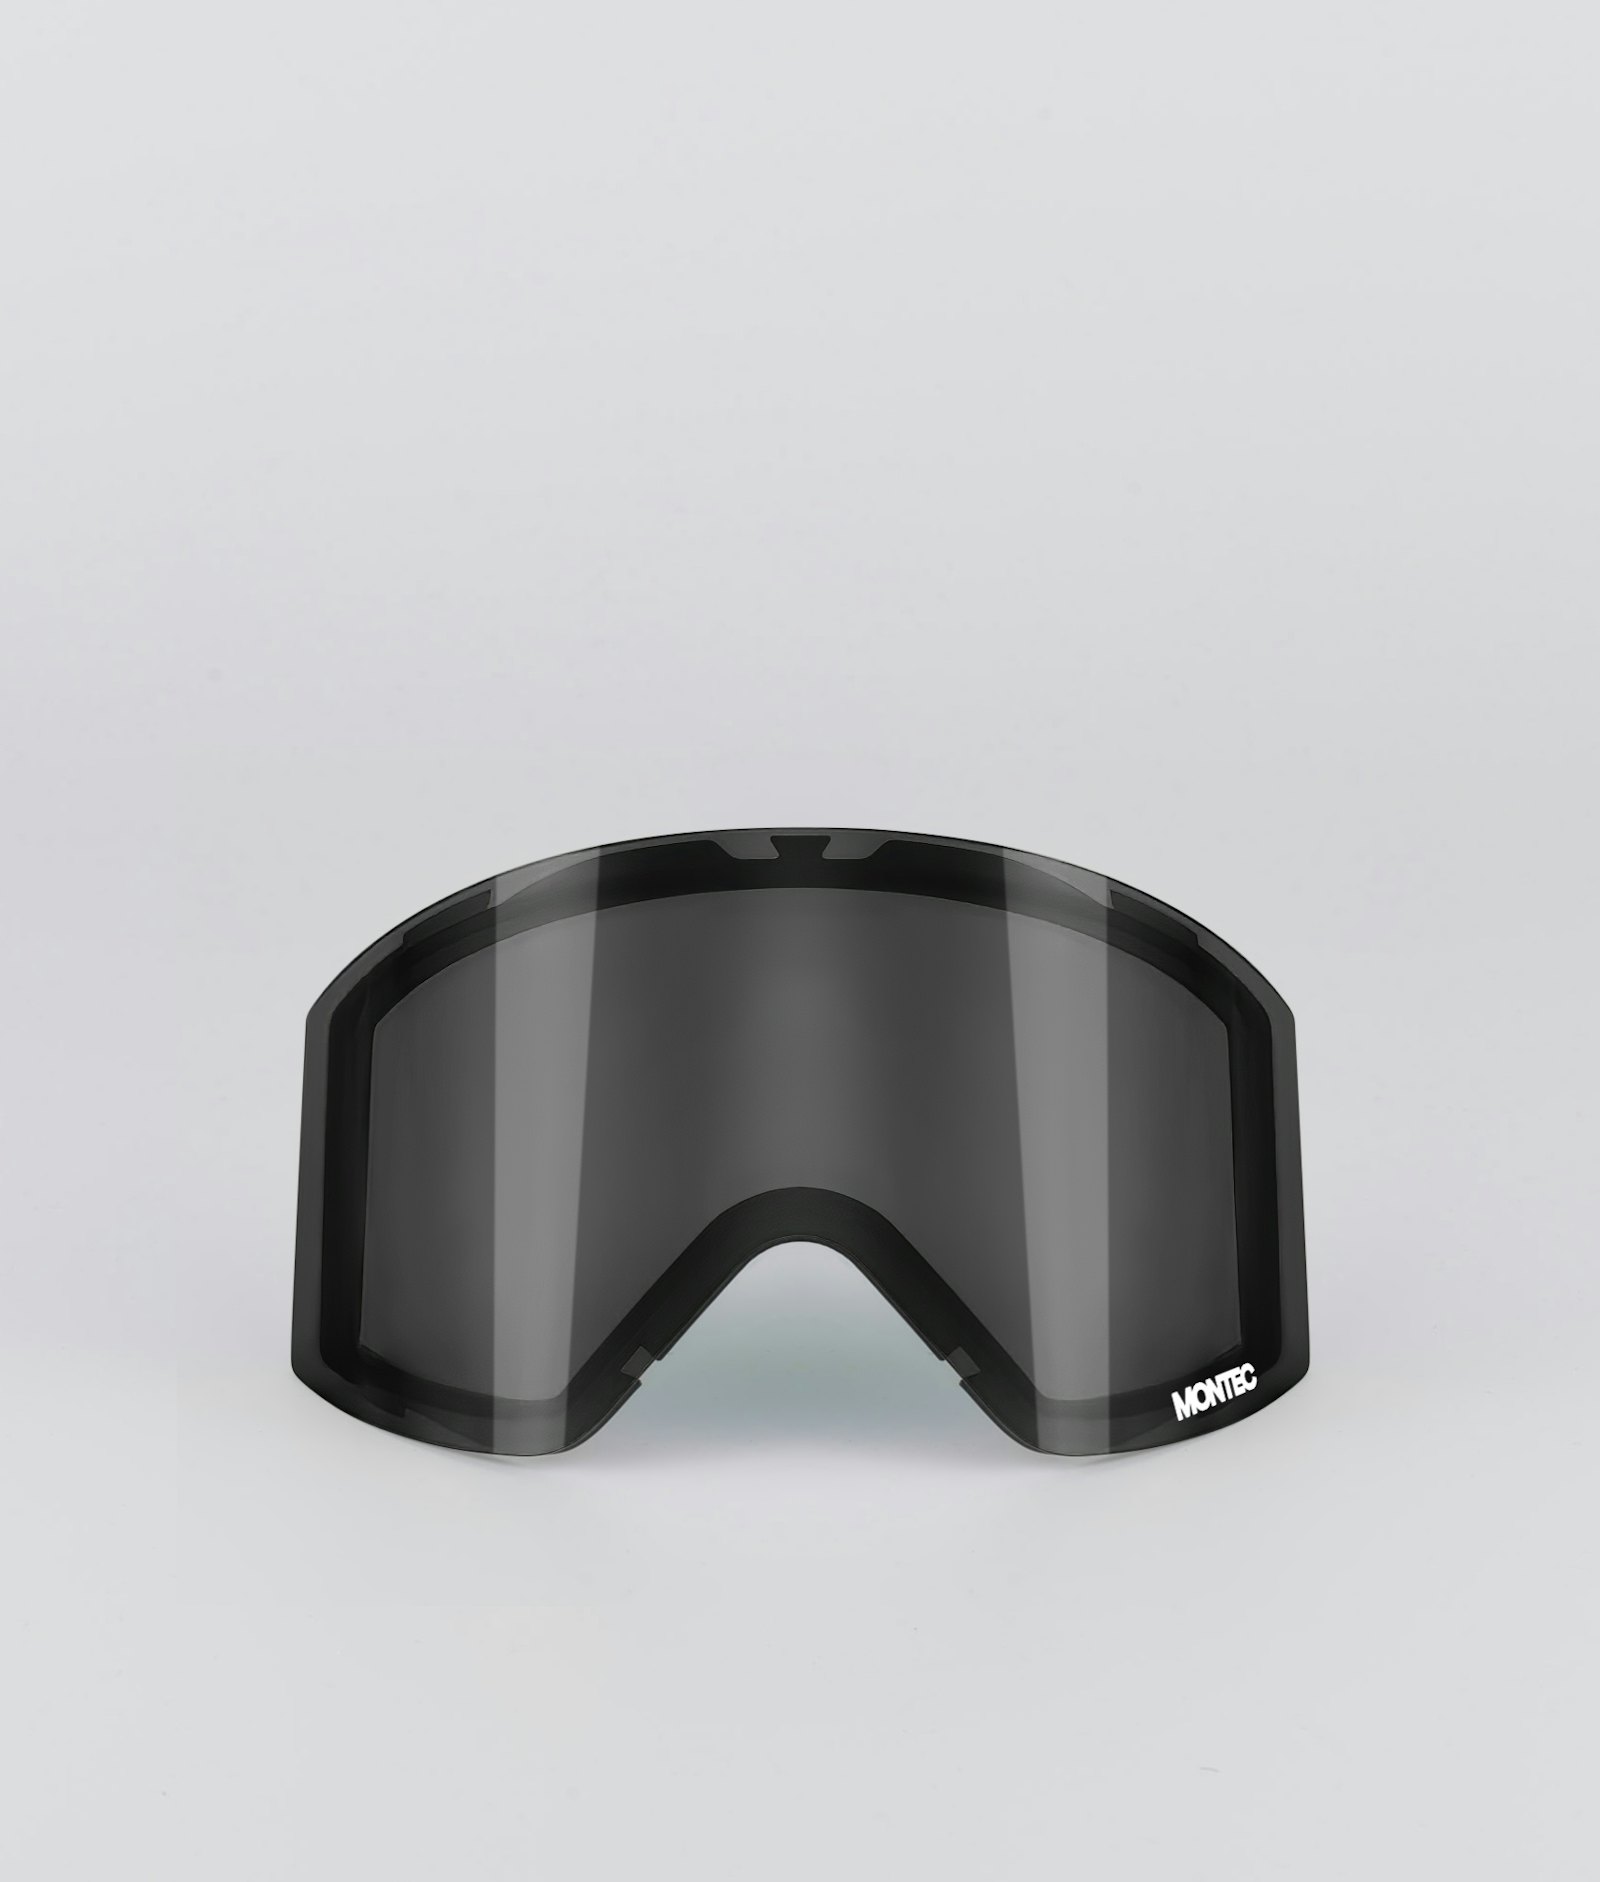 Montec Scope 2020 Goggle Lens Medium Ekstralinse Snow Black